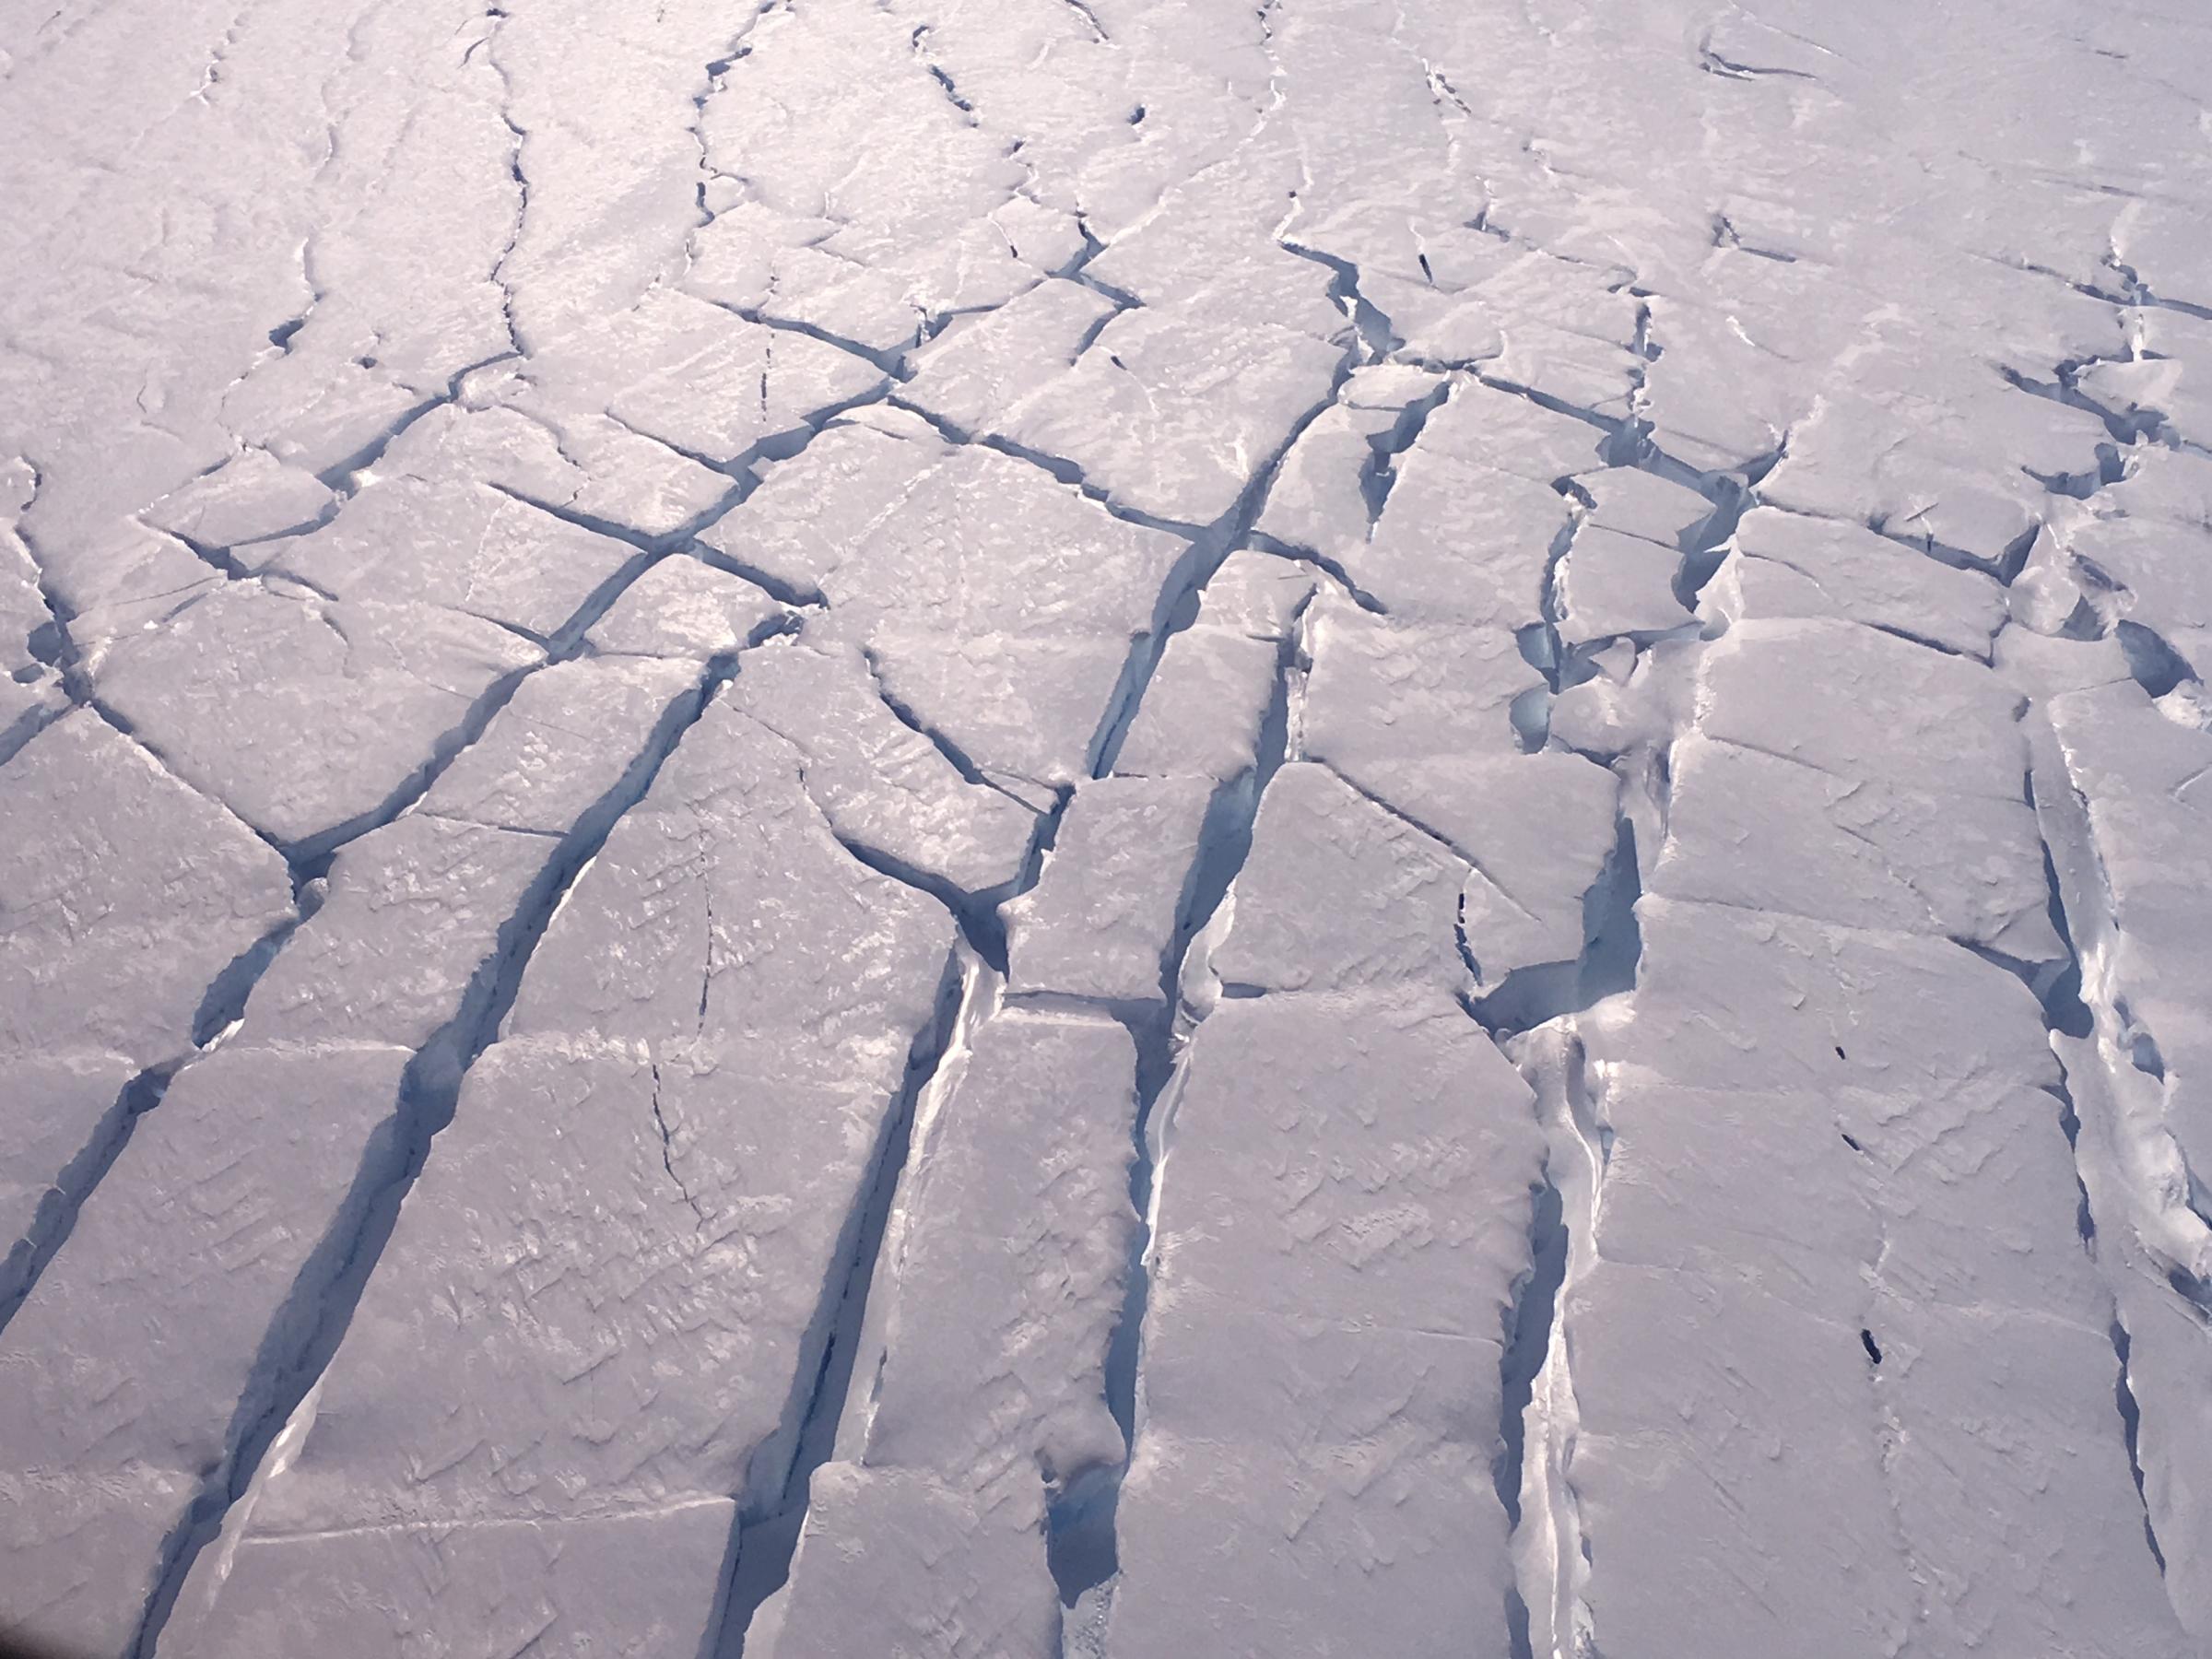 Cracks in Thwaites Glacier in 2020